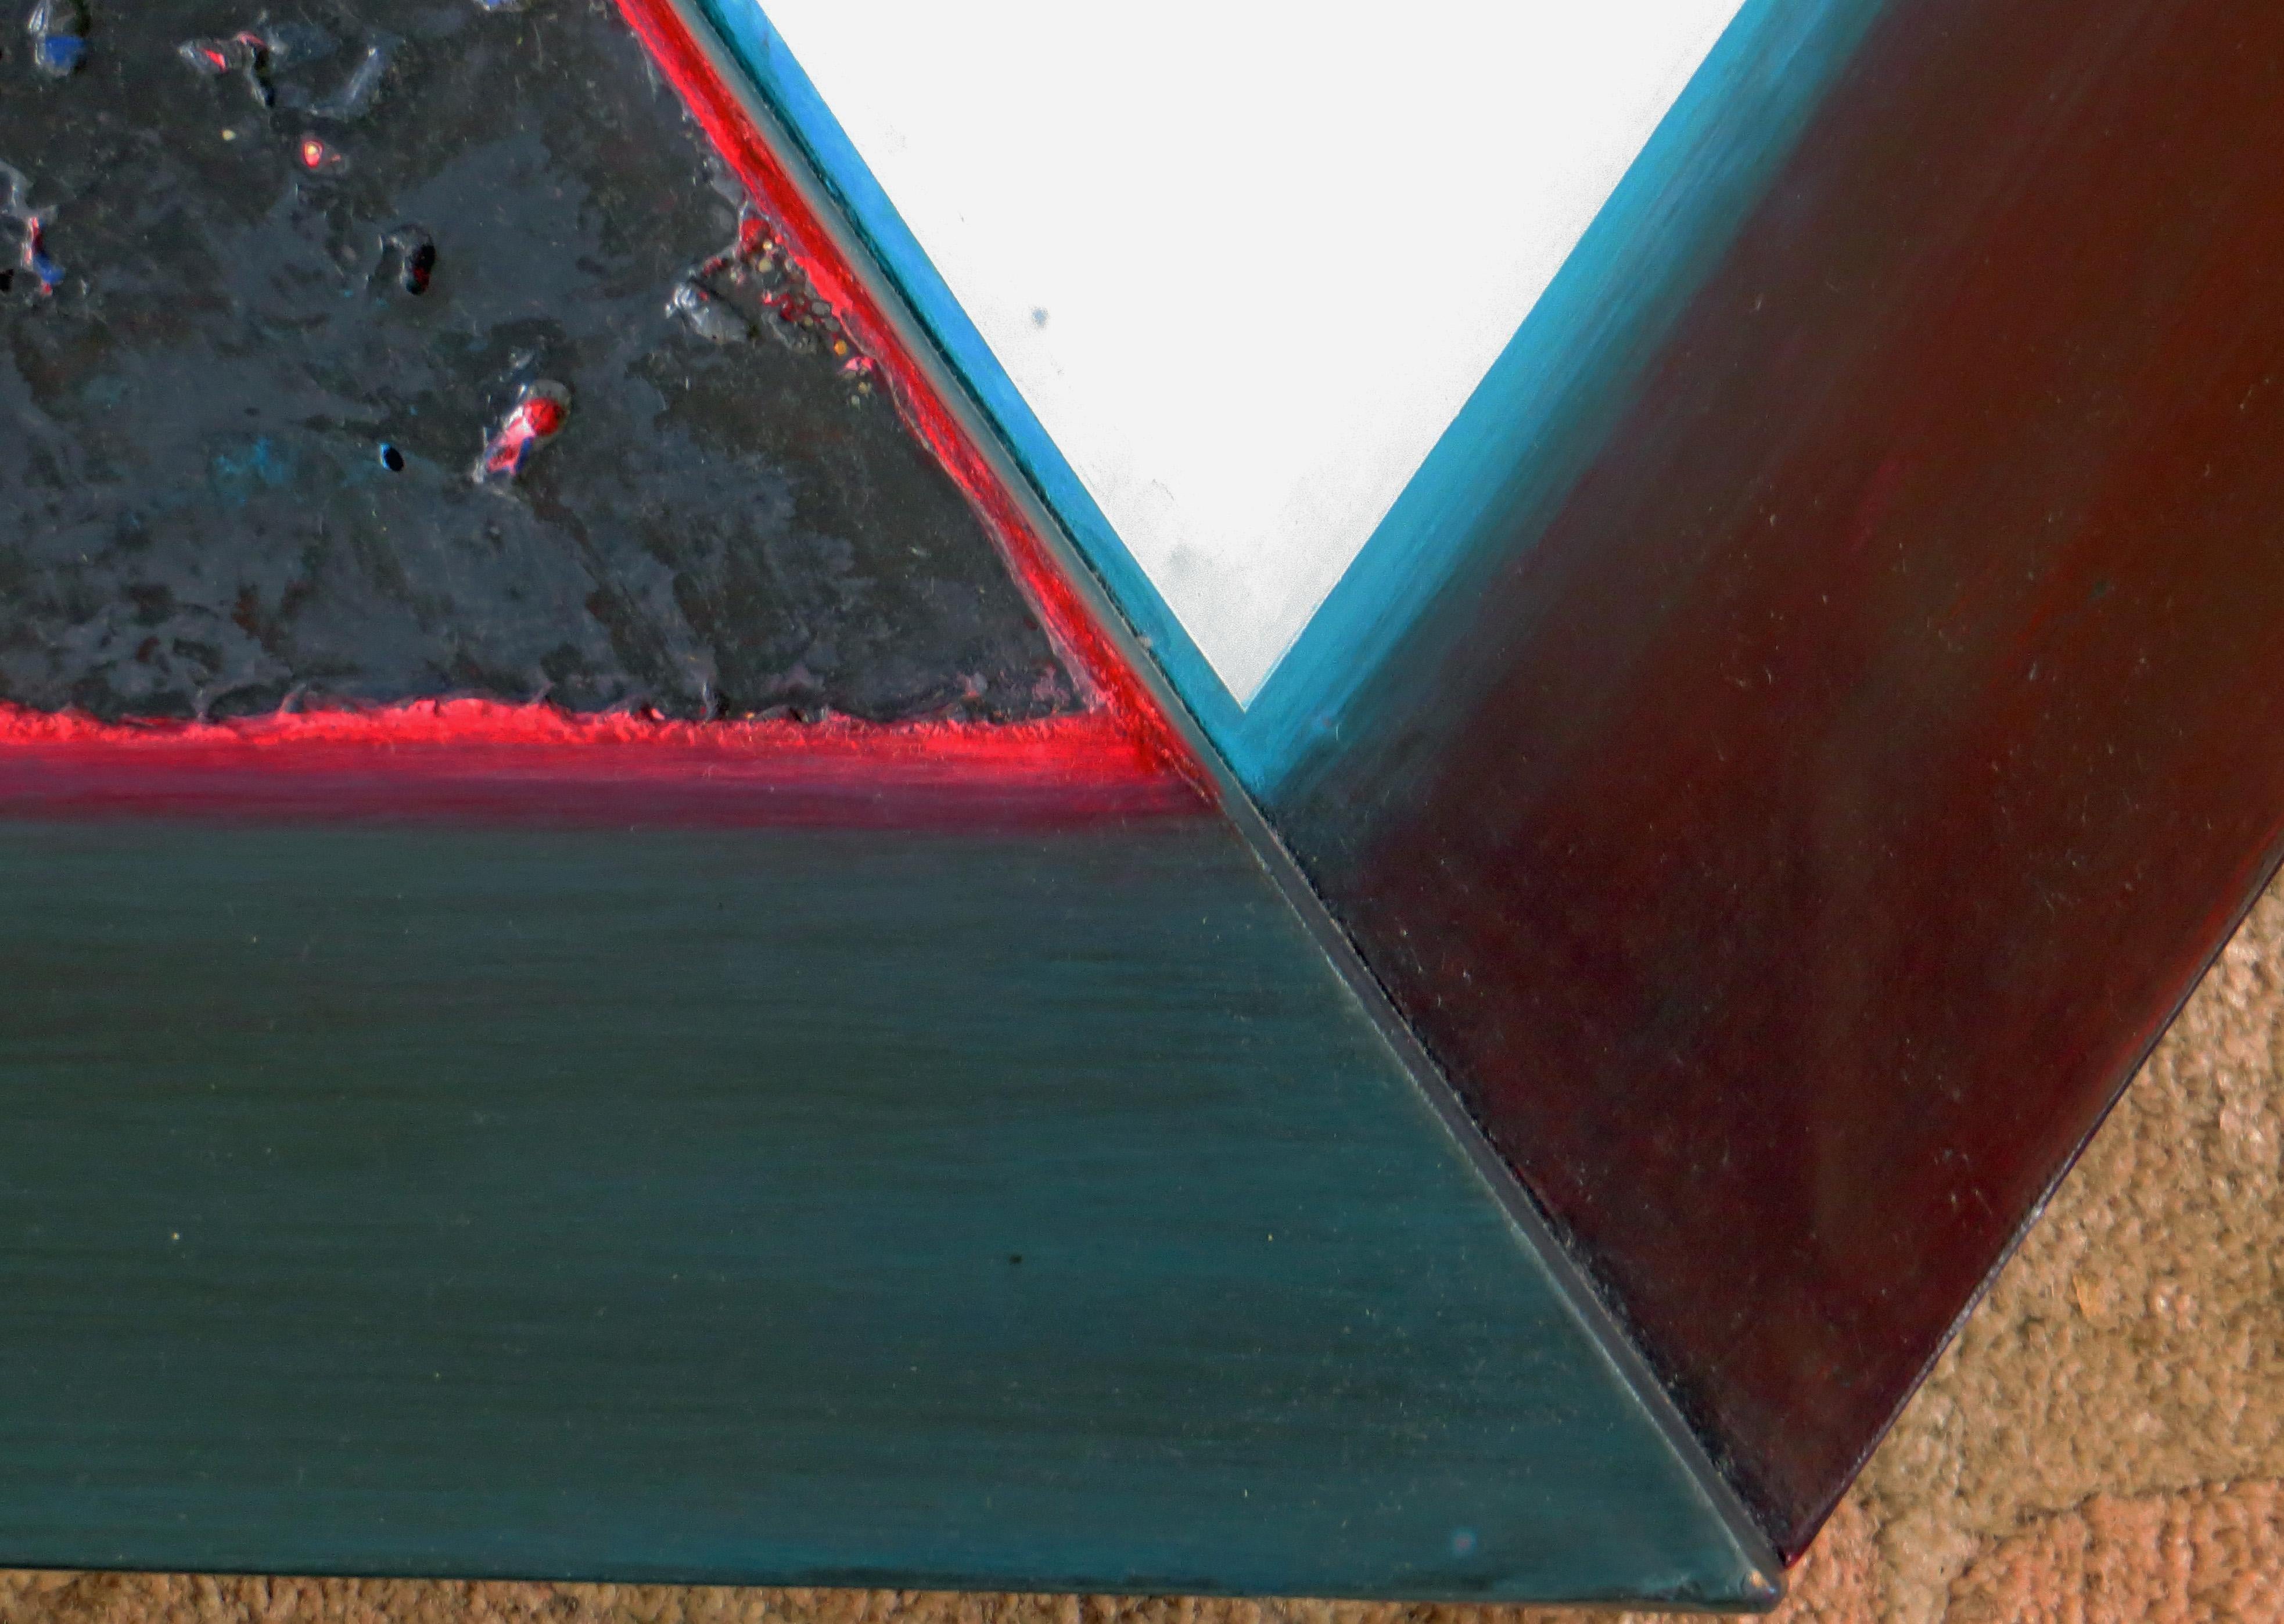 Künstler: Tom Bolles (1953- )
Titel: Dreiecke #3 & #4 Paarungsversuche
Datum: 1987
Medium: Acryl, Sand und Leinwand
Größe: 21 x 44,25 Zoll
Signatur: signiert, betitelt, datiert auf der Rückseite

Dieses Werk lässt sich am besten als minimalistische